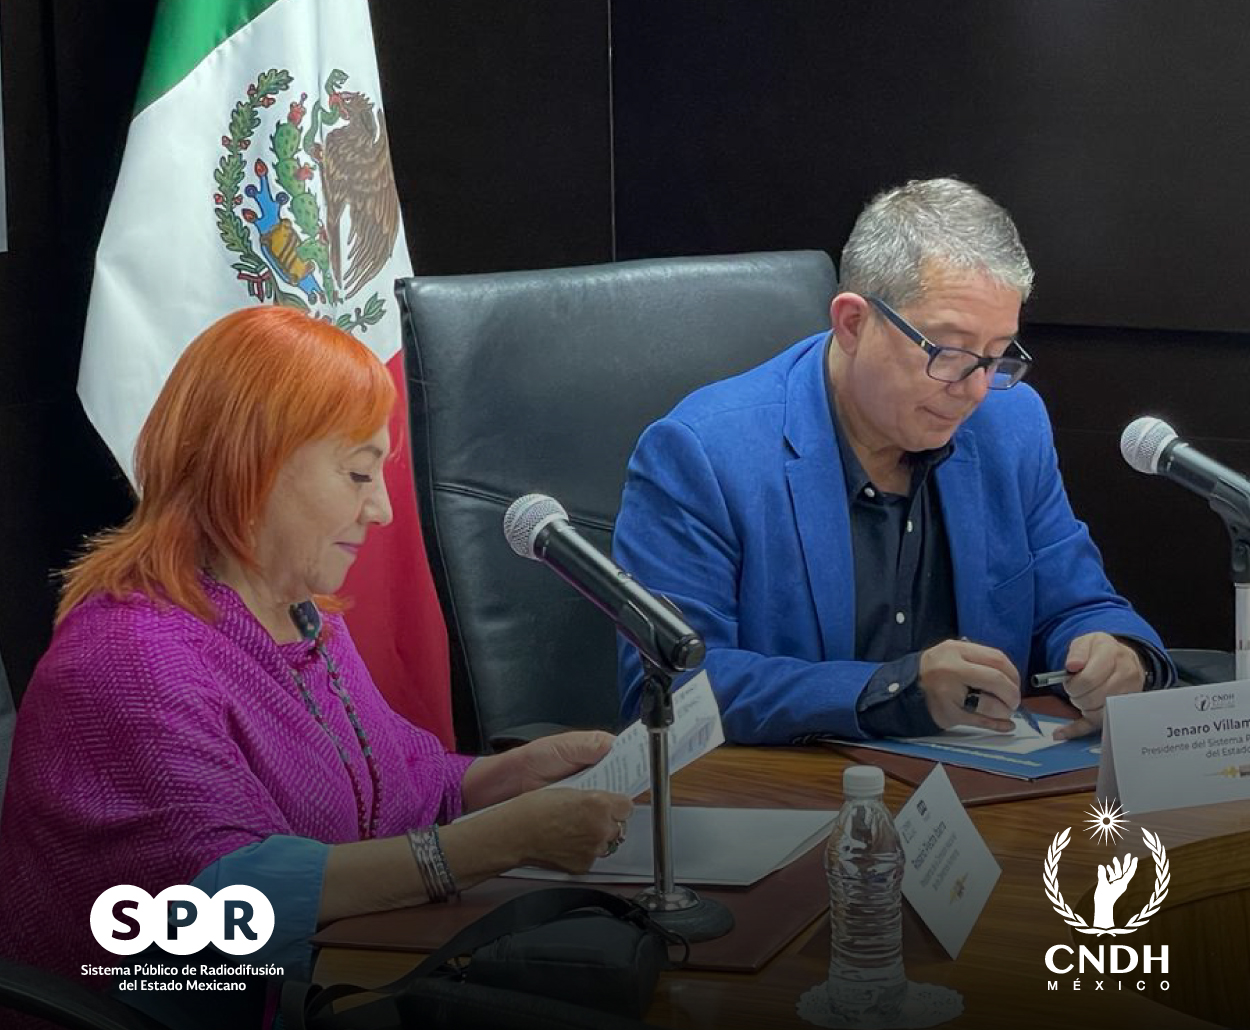 SPR y CNDH firman convenio de colaboración